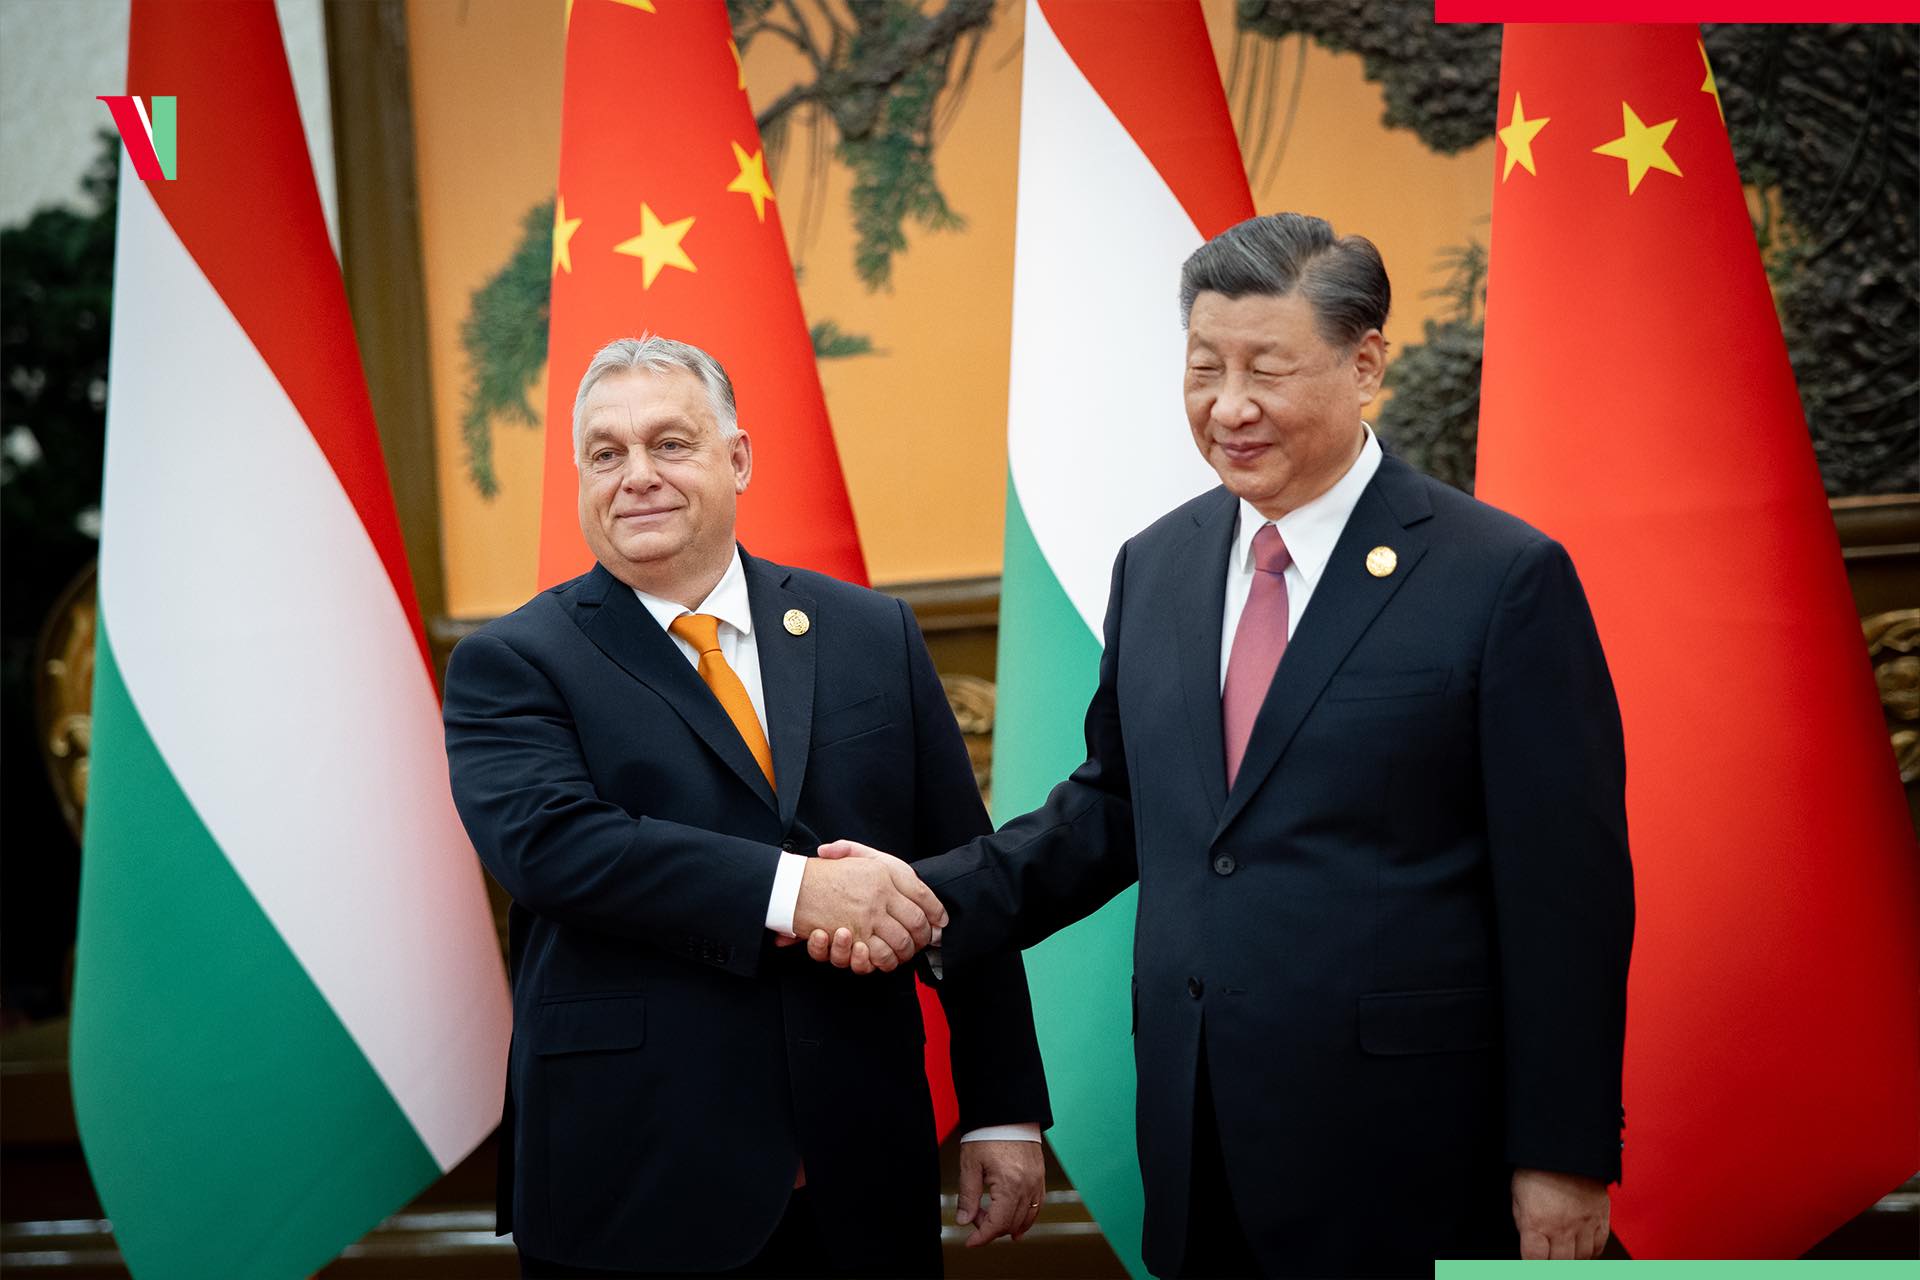 Csak Orbánékon múlik, mire kérik a kínai félkatonai egységeket